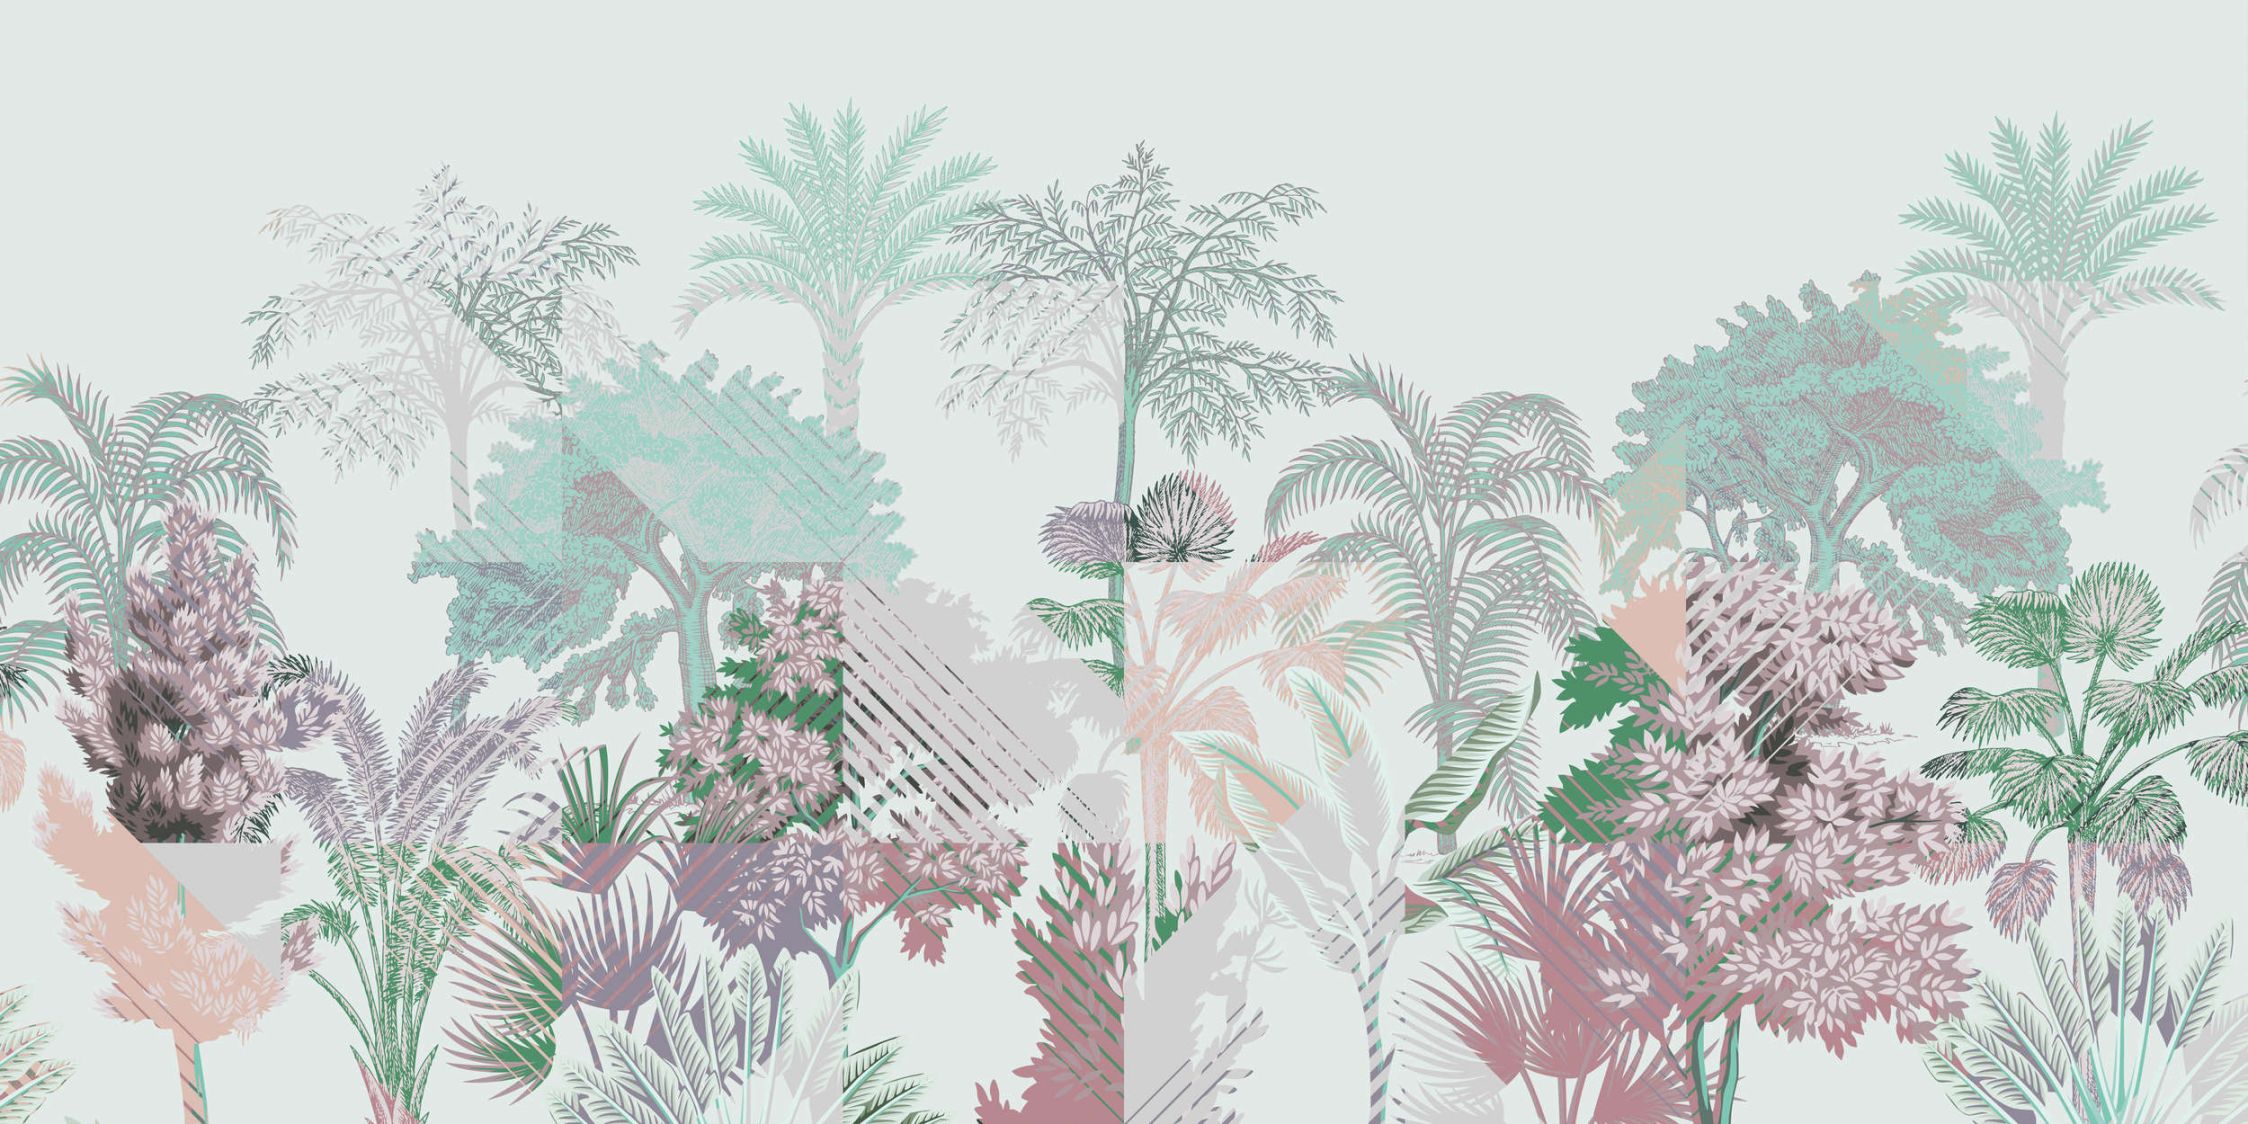             Digital behang »esplanade 1« - Jungle patchwork met struiken - Groen, Roze | Gladde, licht glanzende premium vliesstof
        